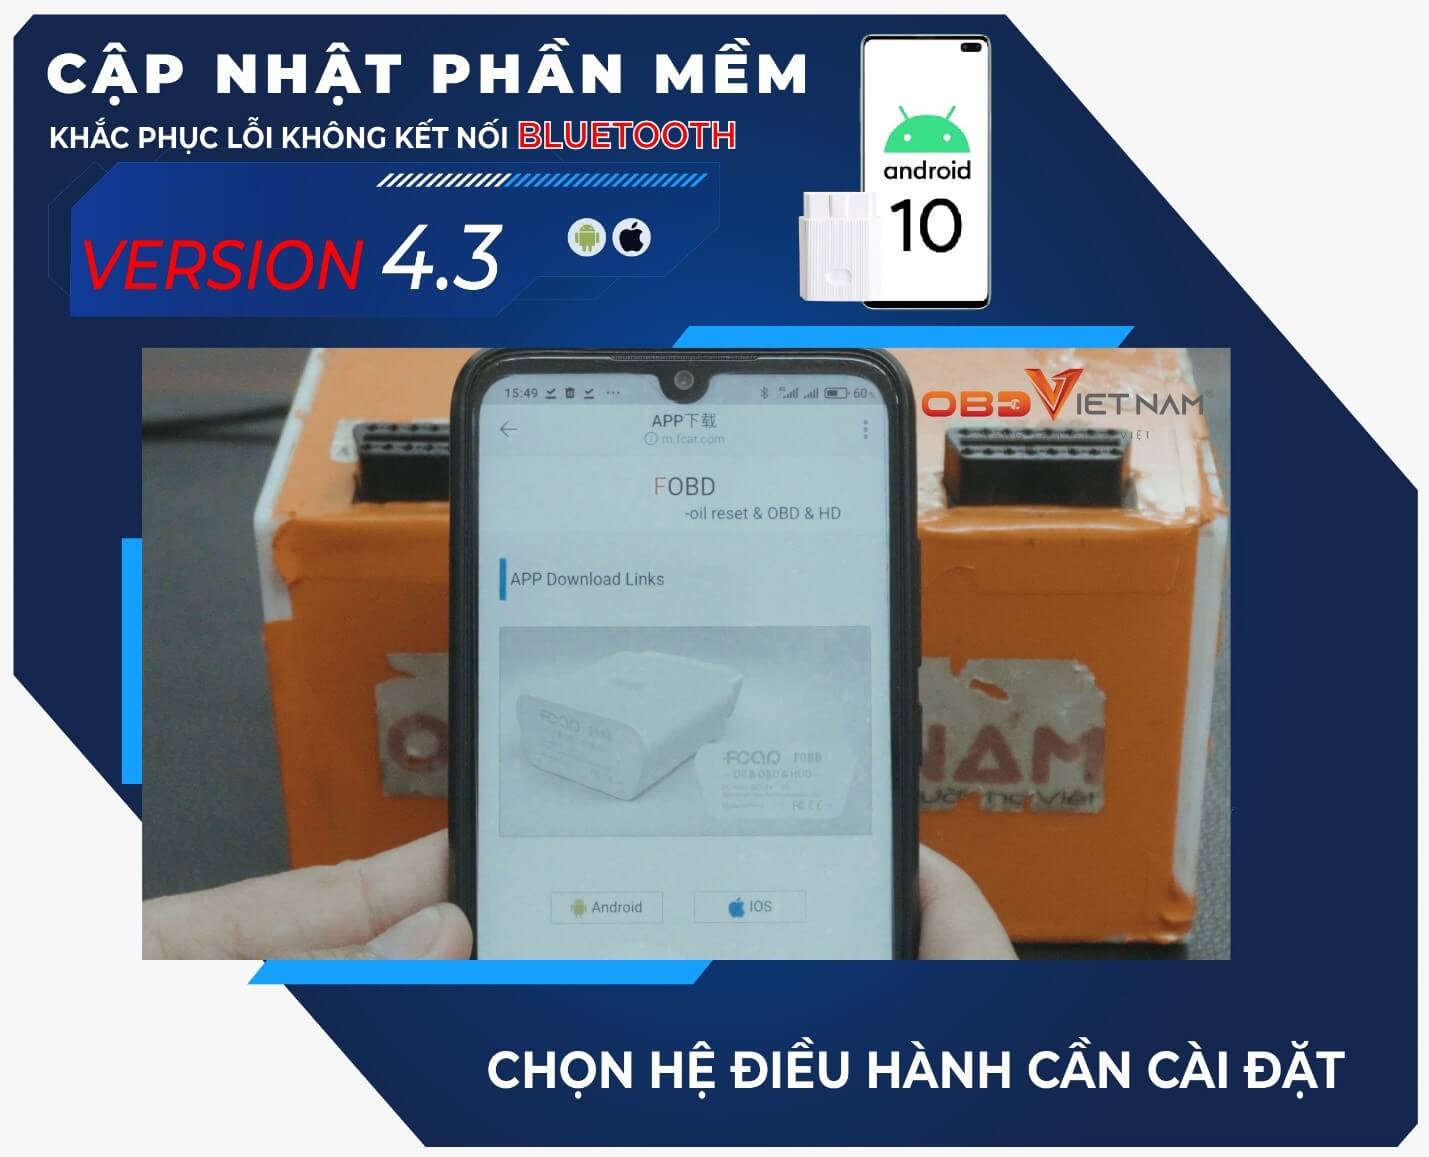 cap-nhat-phan-mem-v4.3-cho-may-chan-doan-fobd9